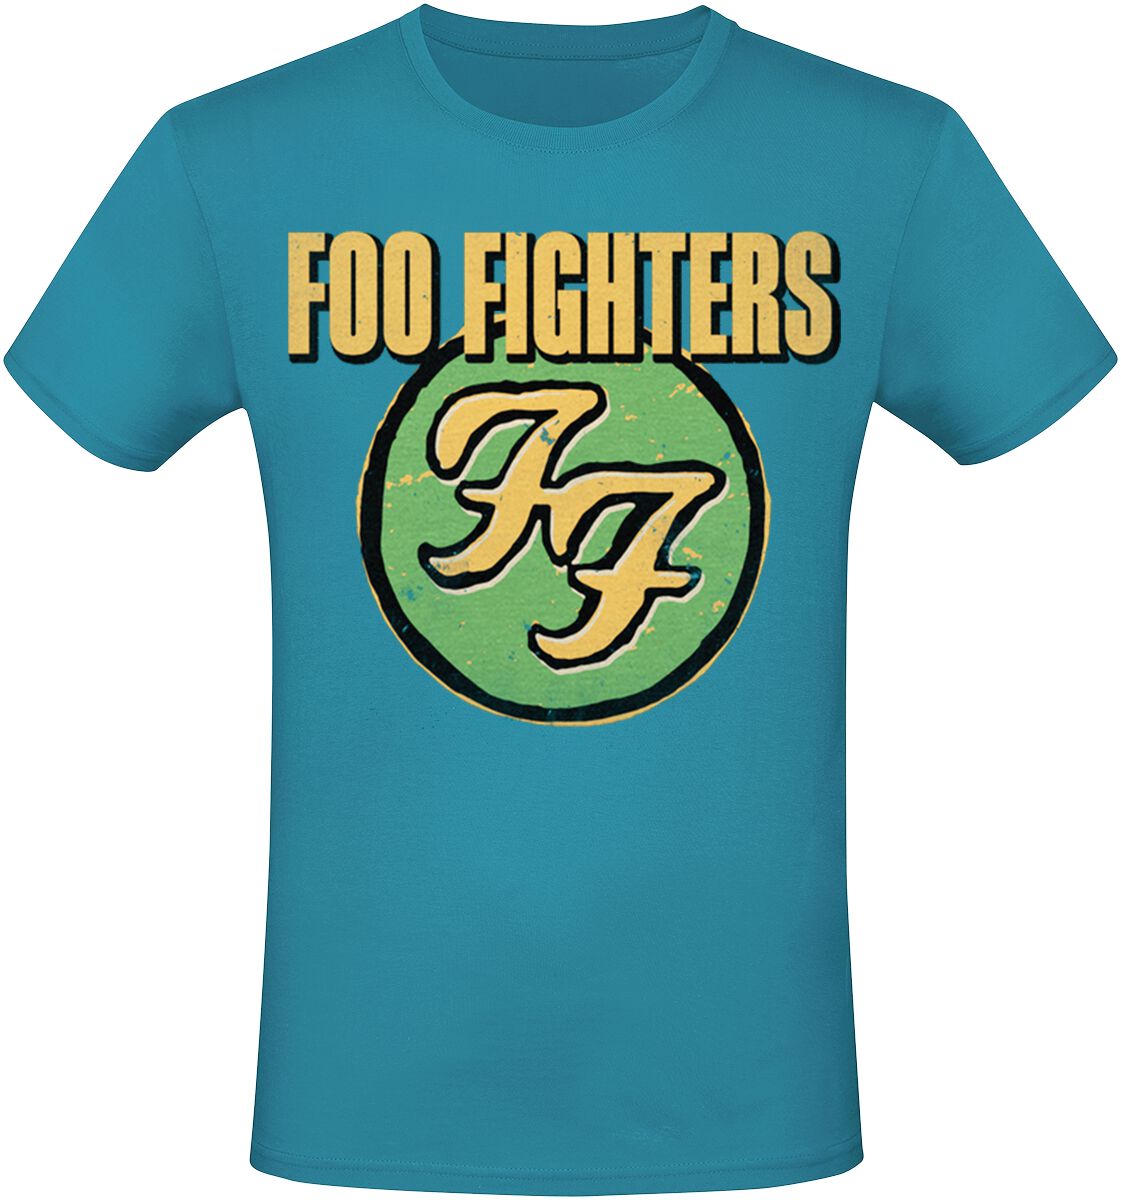 Foo Fighters T-Shirt - Logo - S bis 3XL - für Männer - Größe L - blau  - Lizenziertes Merchandise!